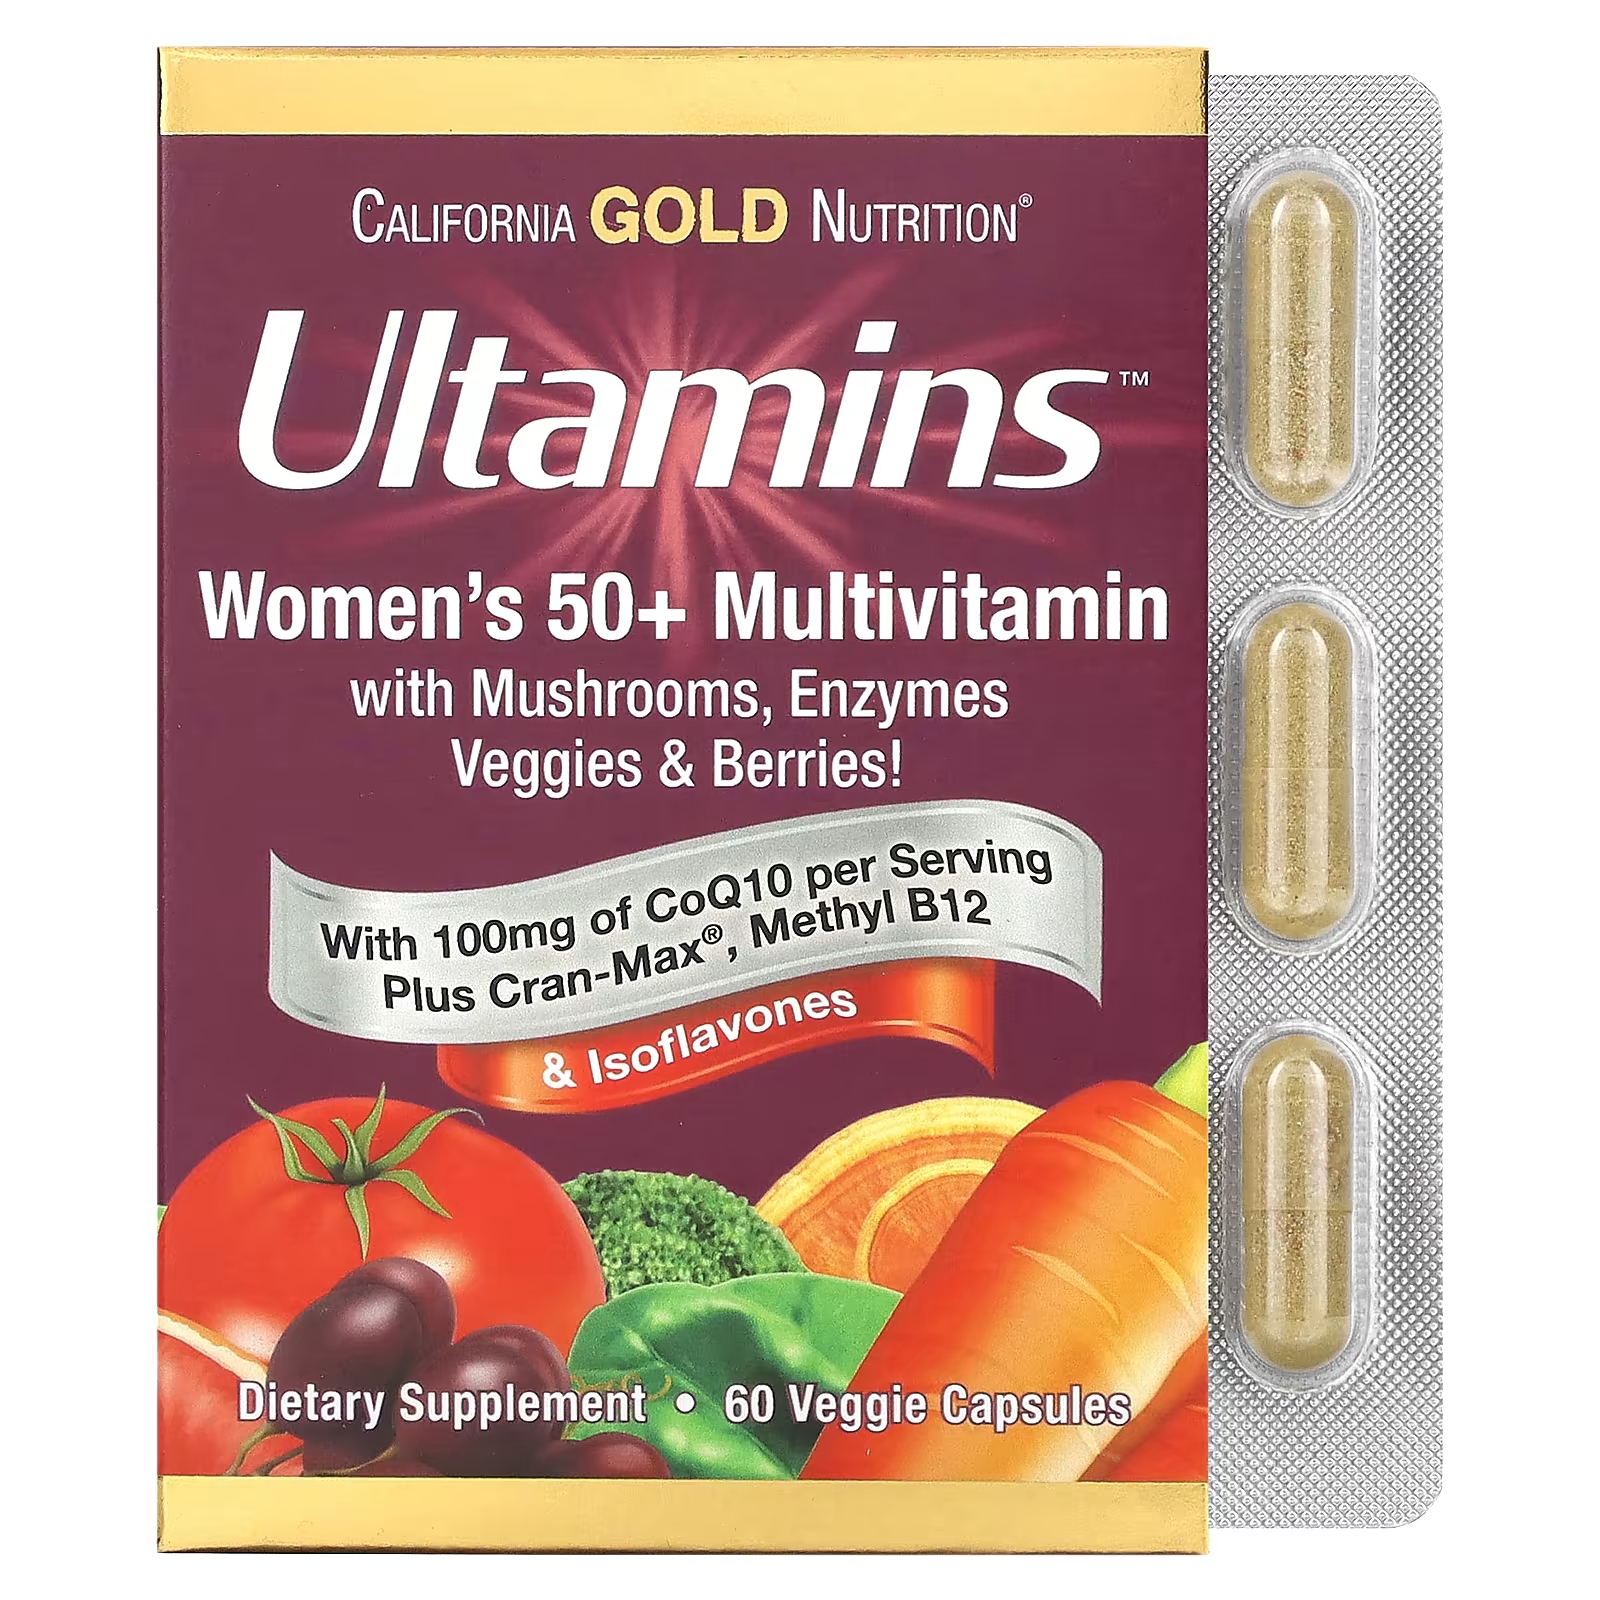 Мультивитамины California Gold Nutrition Ultamins для женщин старше 50 лет с коэнзимом Q10, грибами, ферментами, овощами и ягодами, 60 растительных капсул мультивитамины с ягодами nature s way для женщин старше 50 лет 60 жевательных конфет